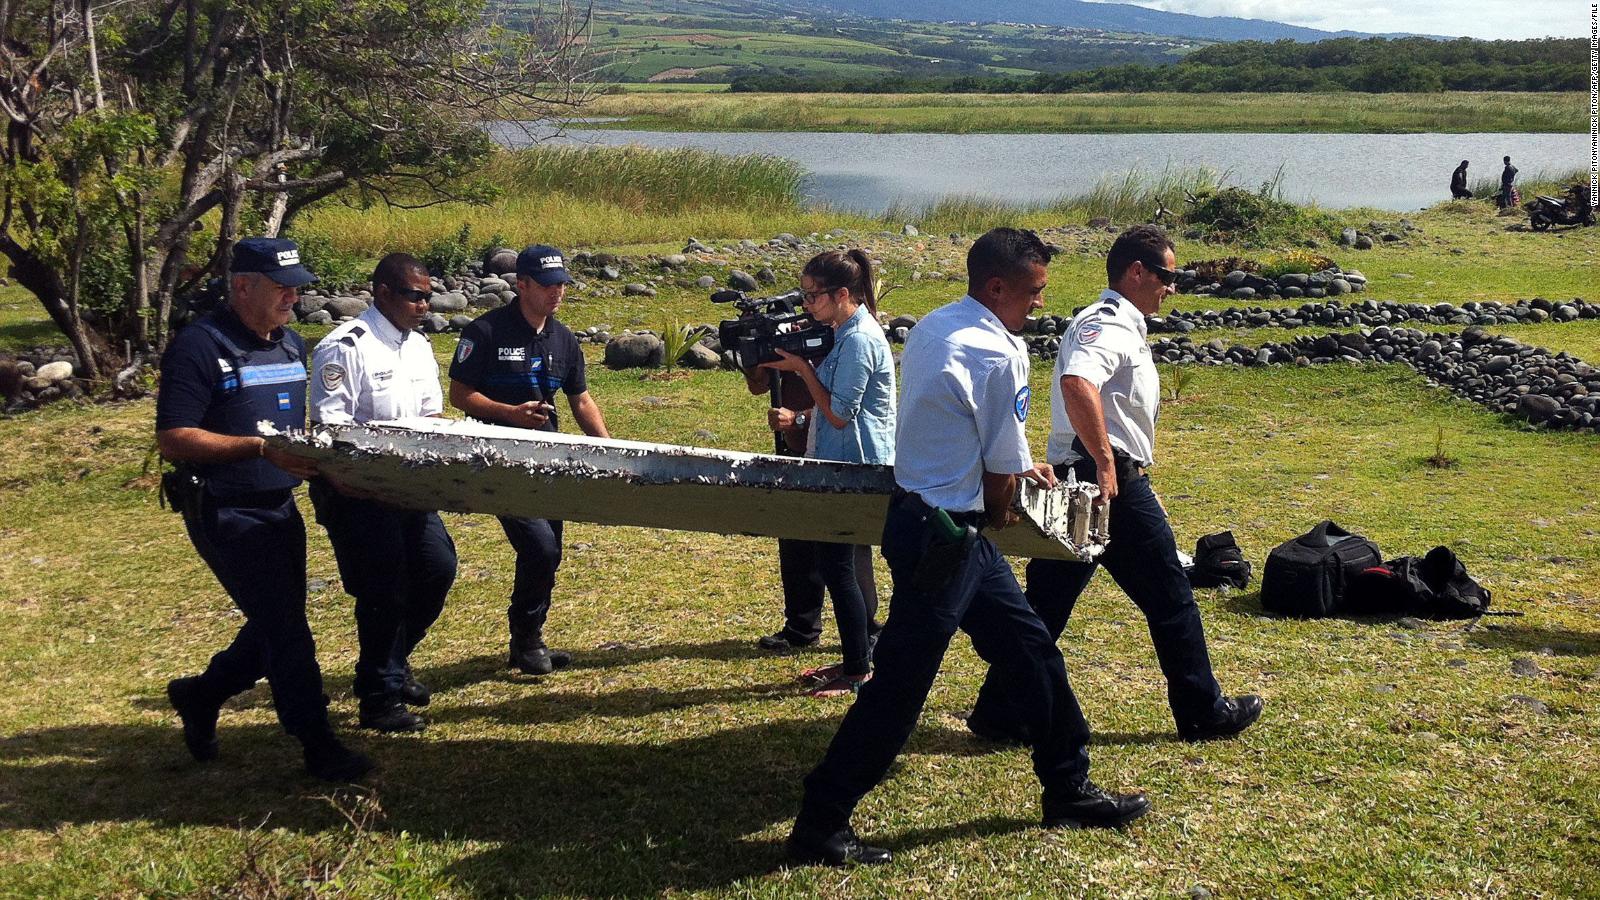 10 años sin respuesta: ¿qué pasó con el vuelo MH370 de Malaysia
Airlines?